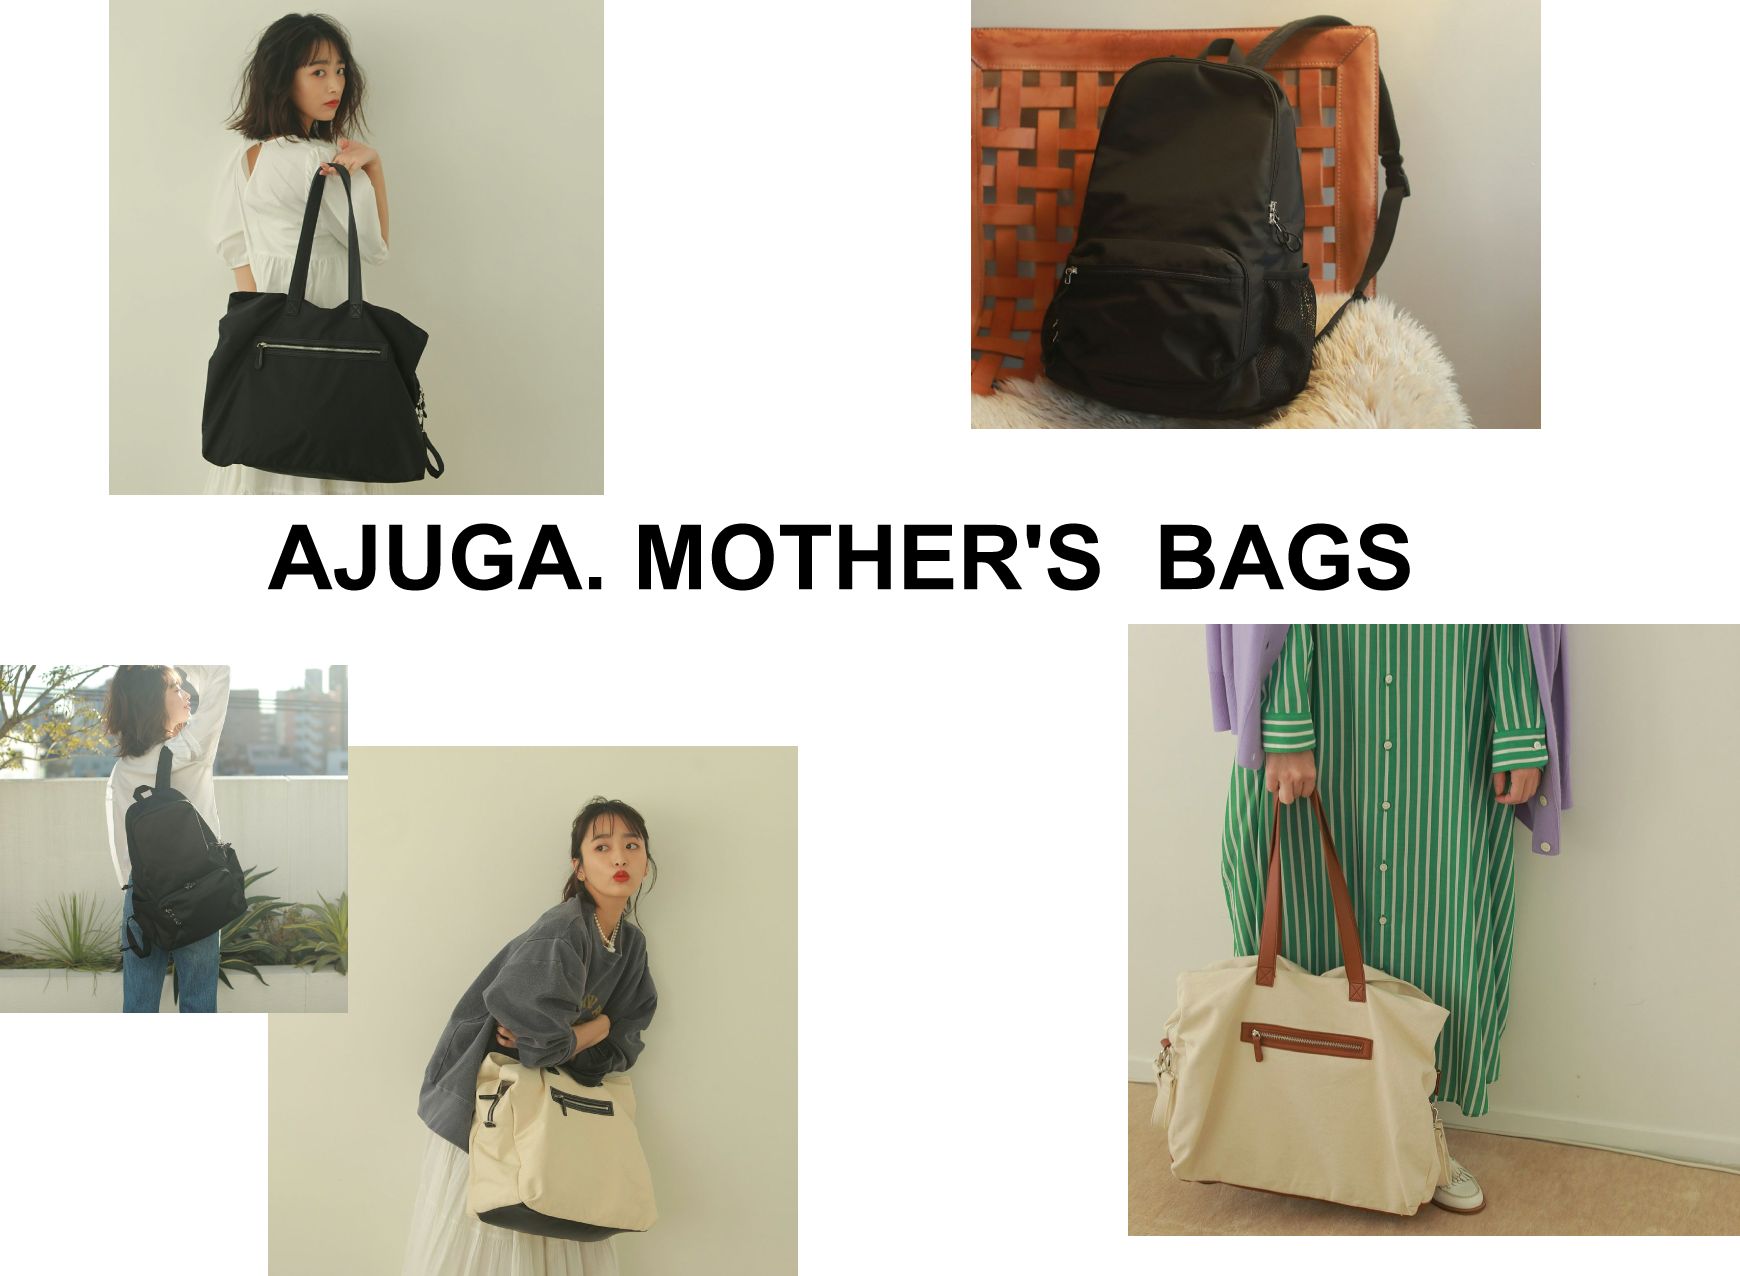 AJUGA. MOTHER'S BAGS